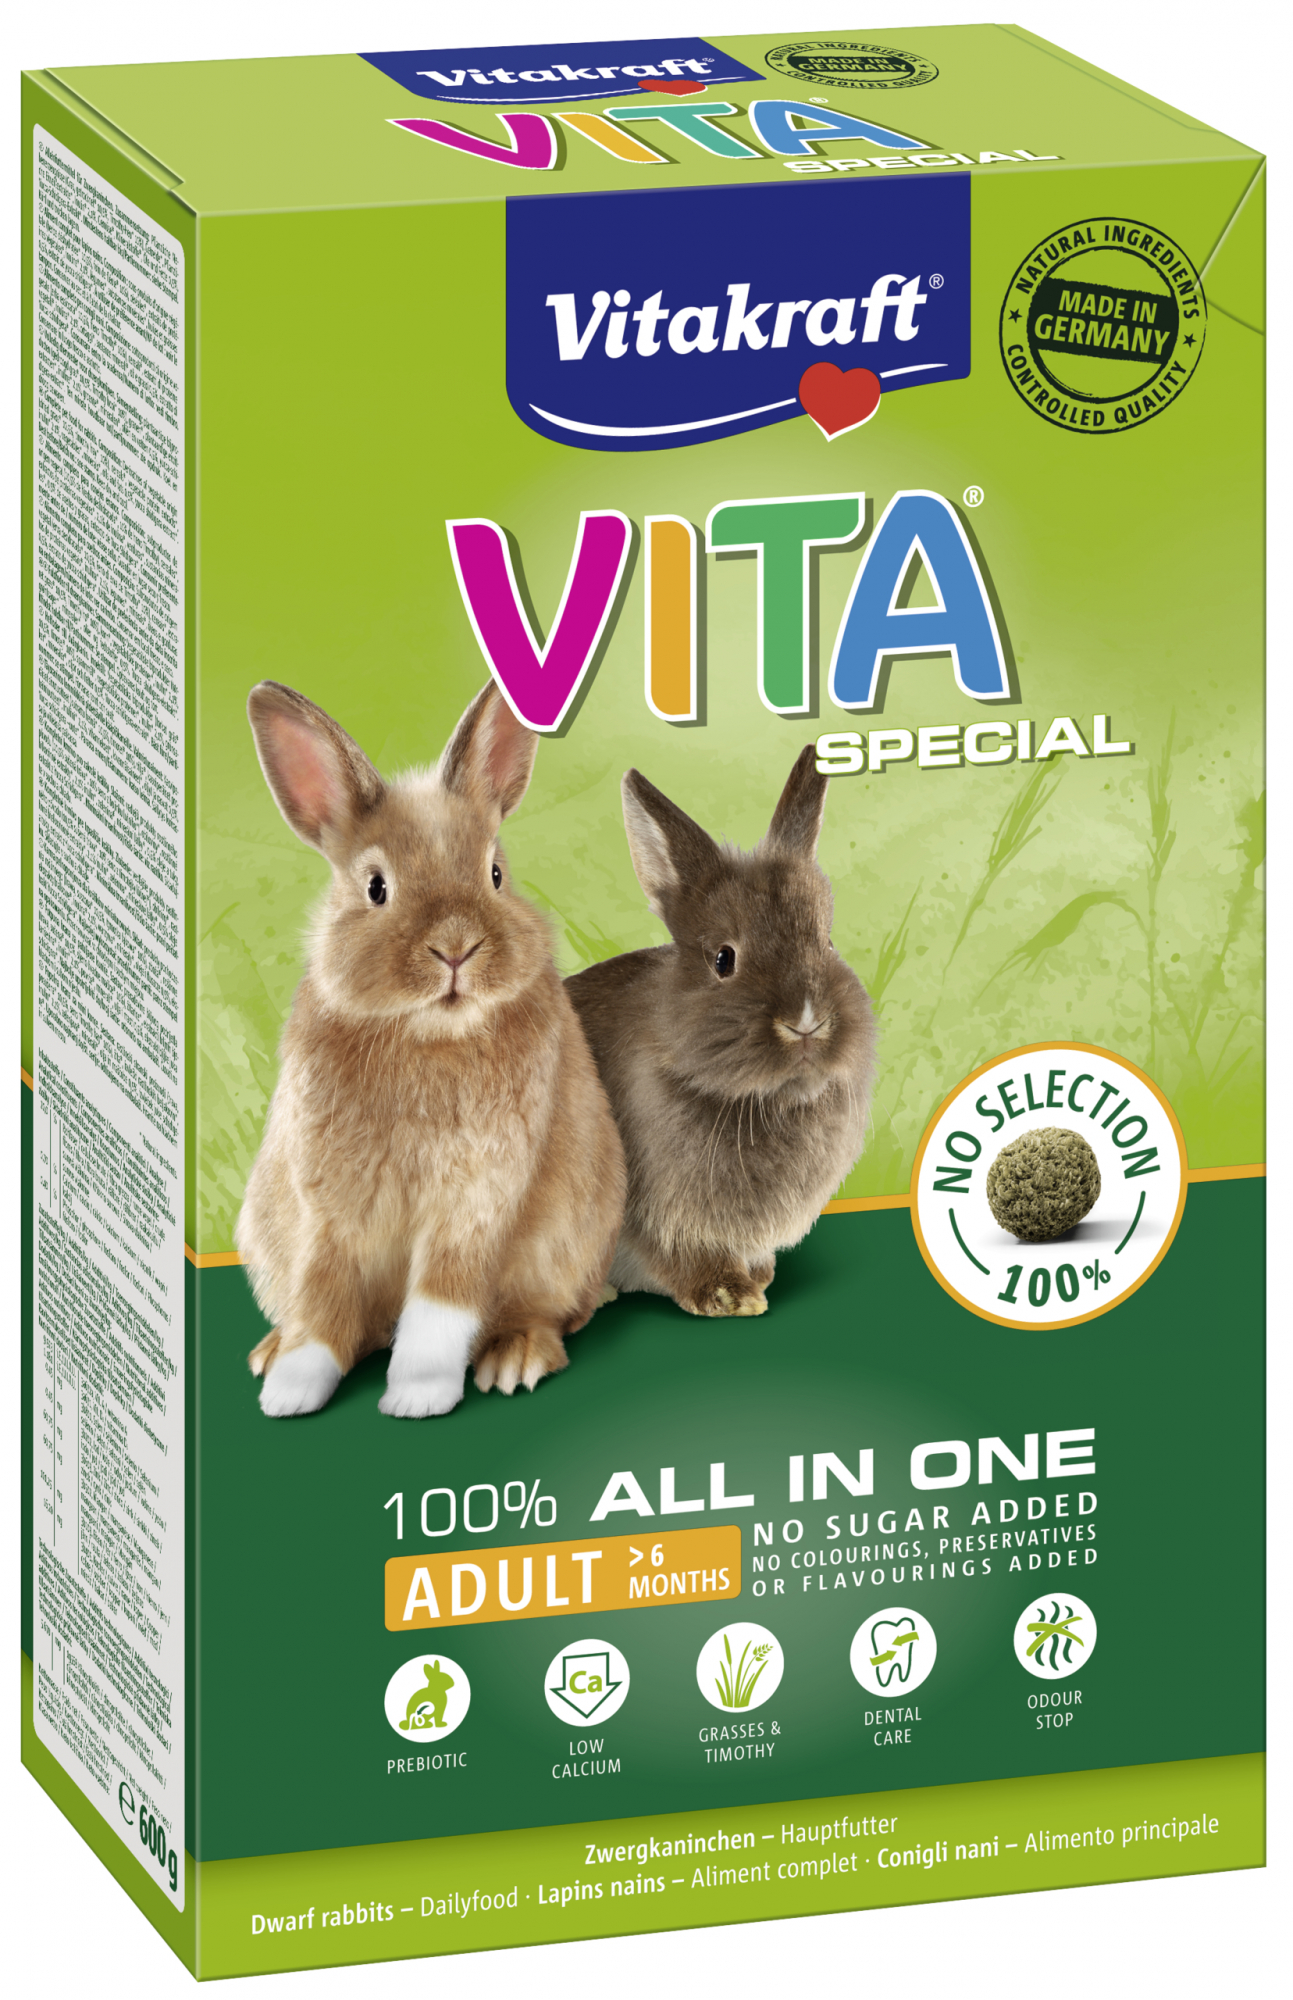 Vitakraft Vita Special Pienso completo para conejos adultos